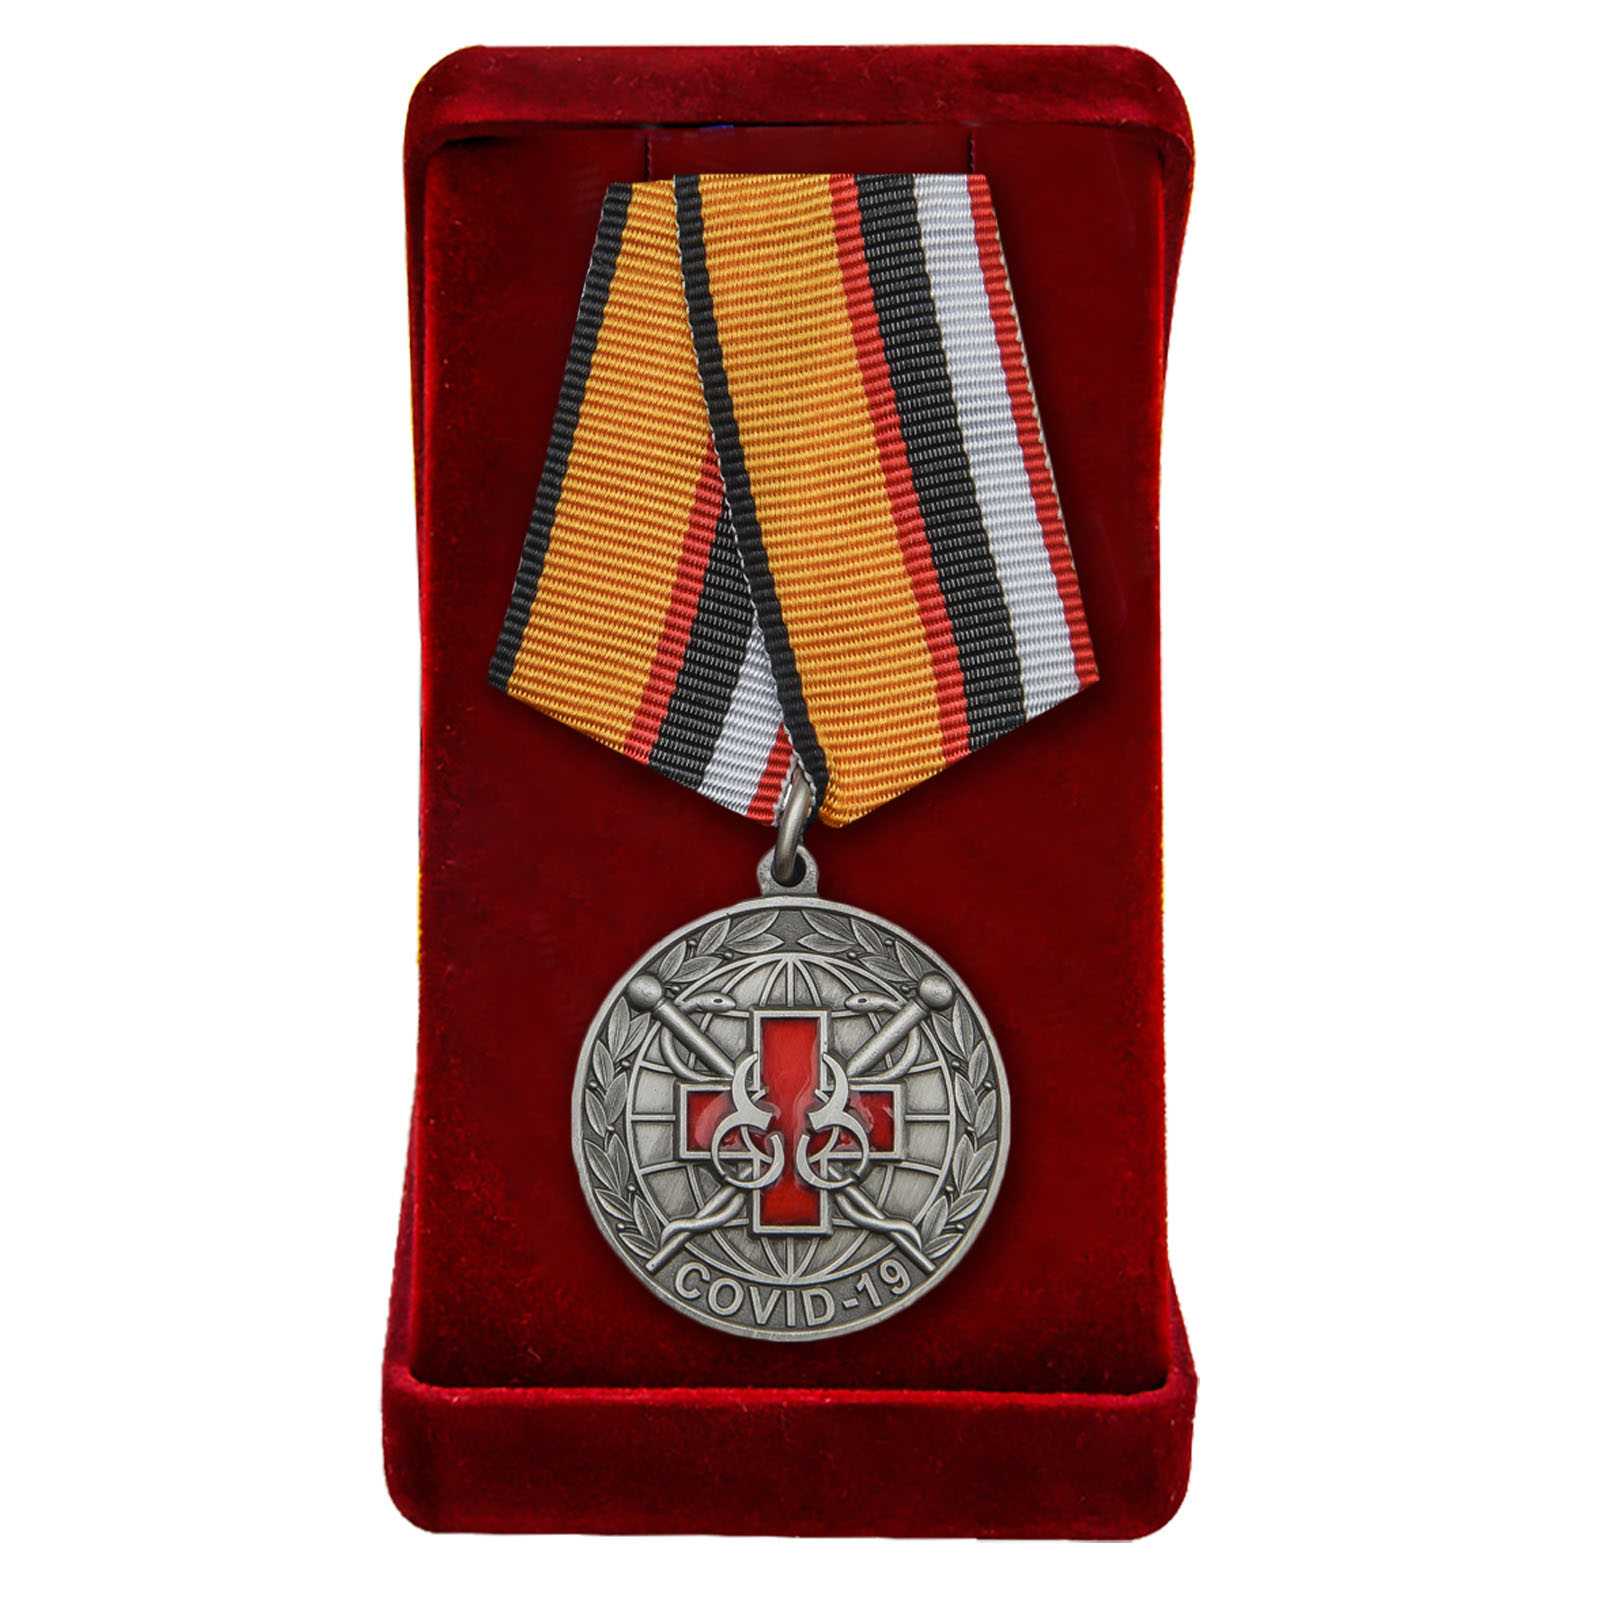 Памятная медаль "За борьбу с пандемией COVID-19" 